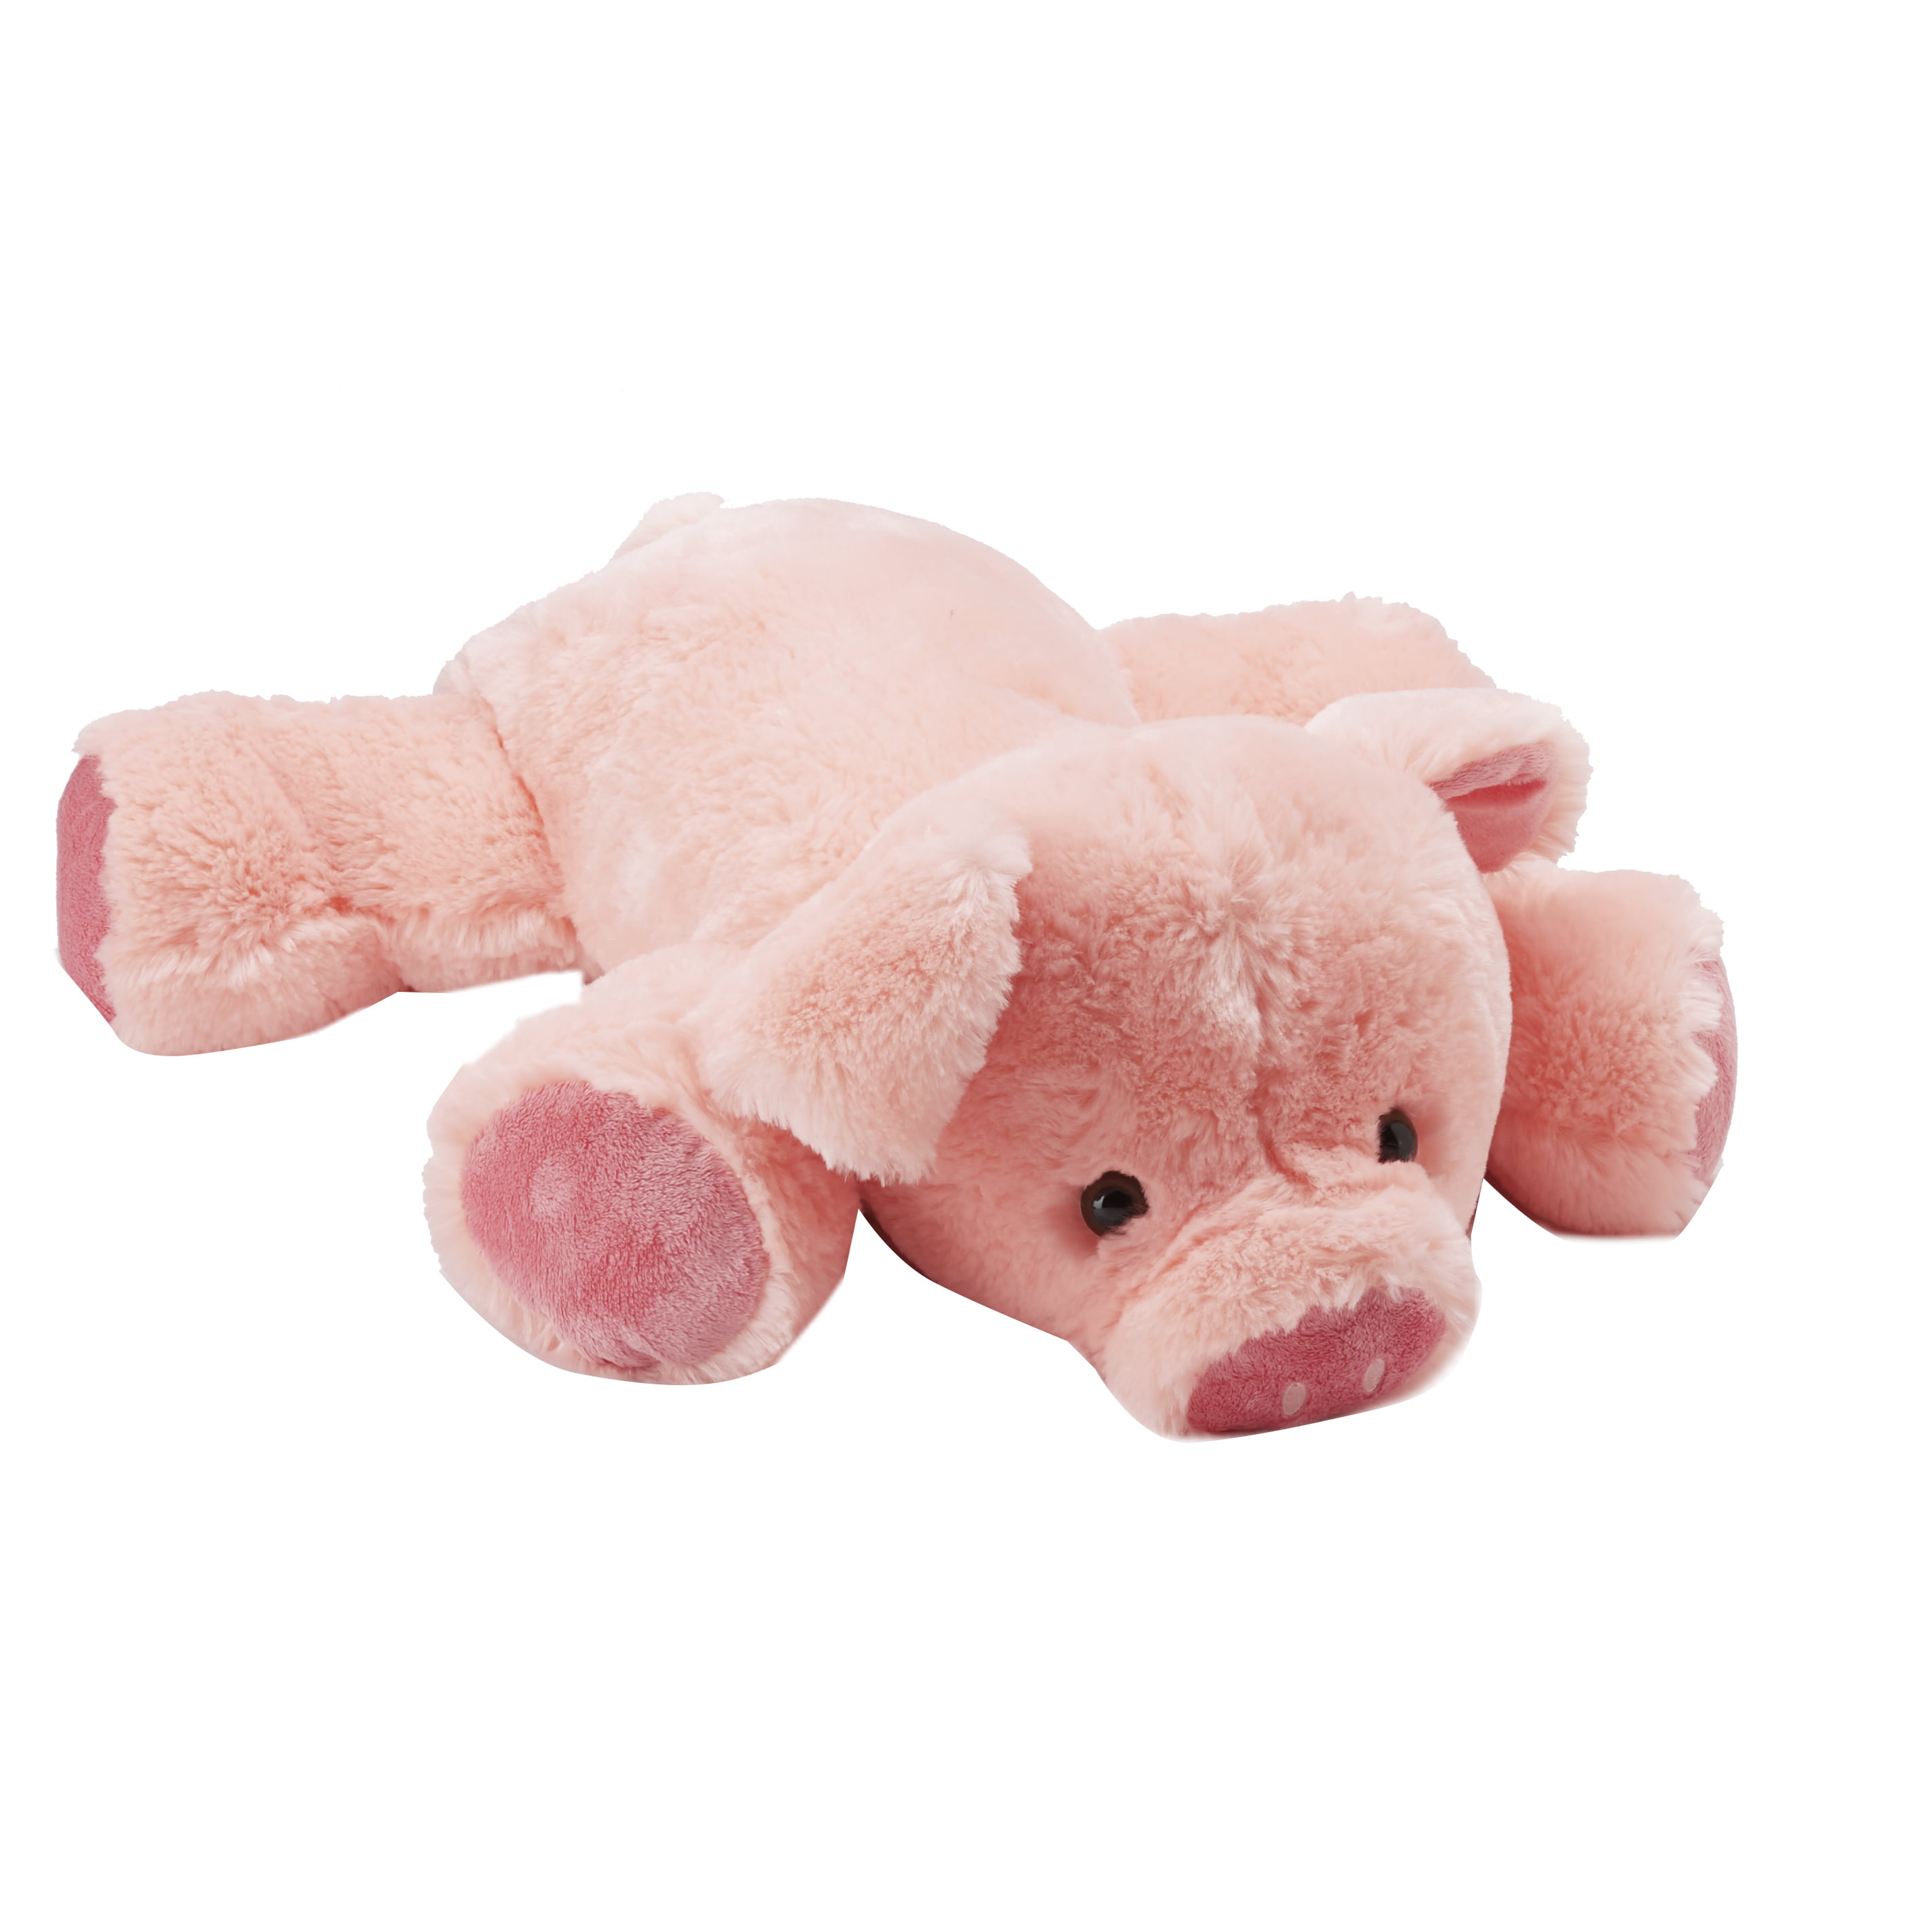 jumbo pig stuffed animal